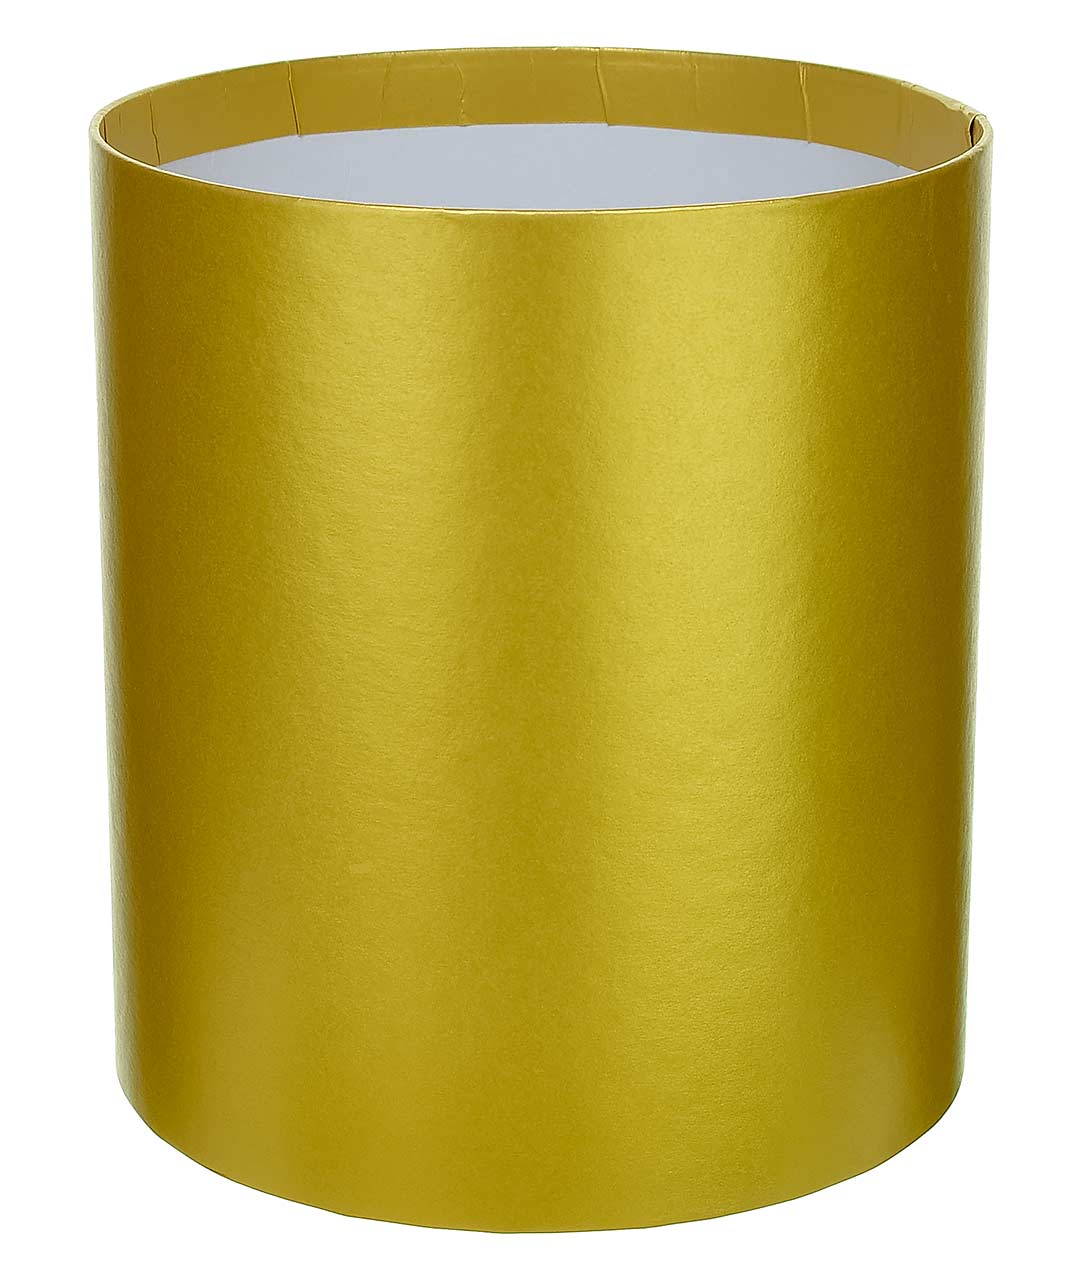 Изображение Коробка круглая для цветов золотистая из картона 180/200 без крышки